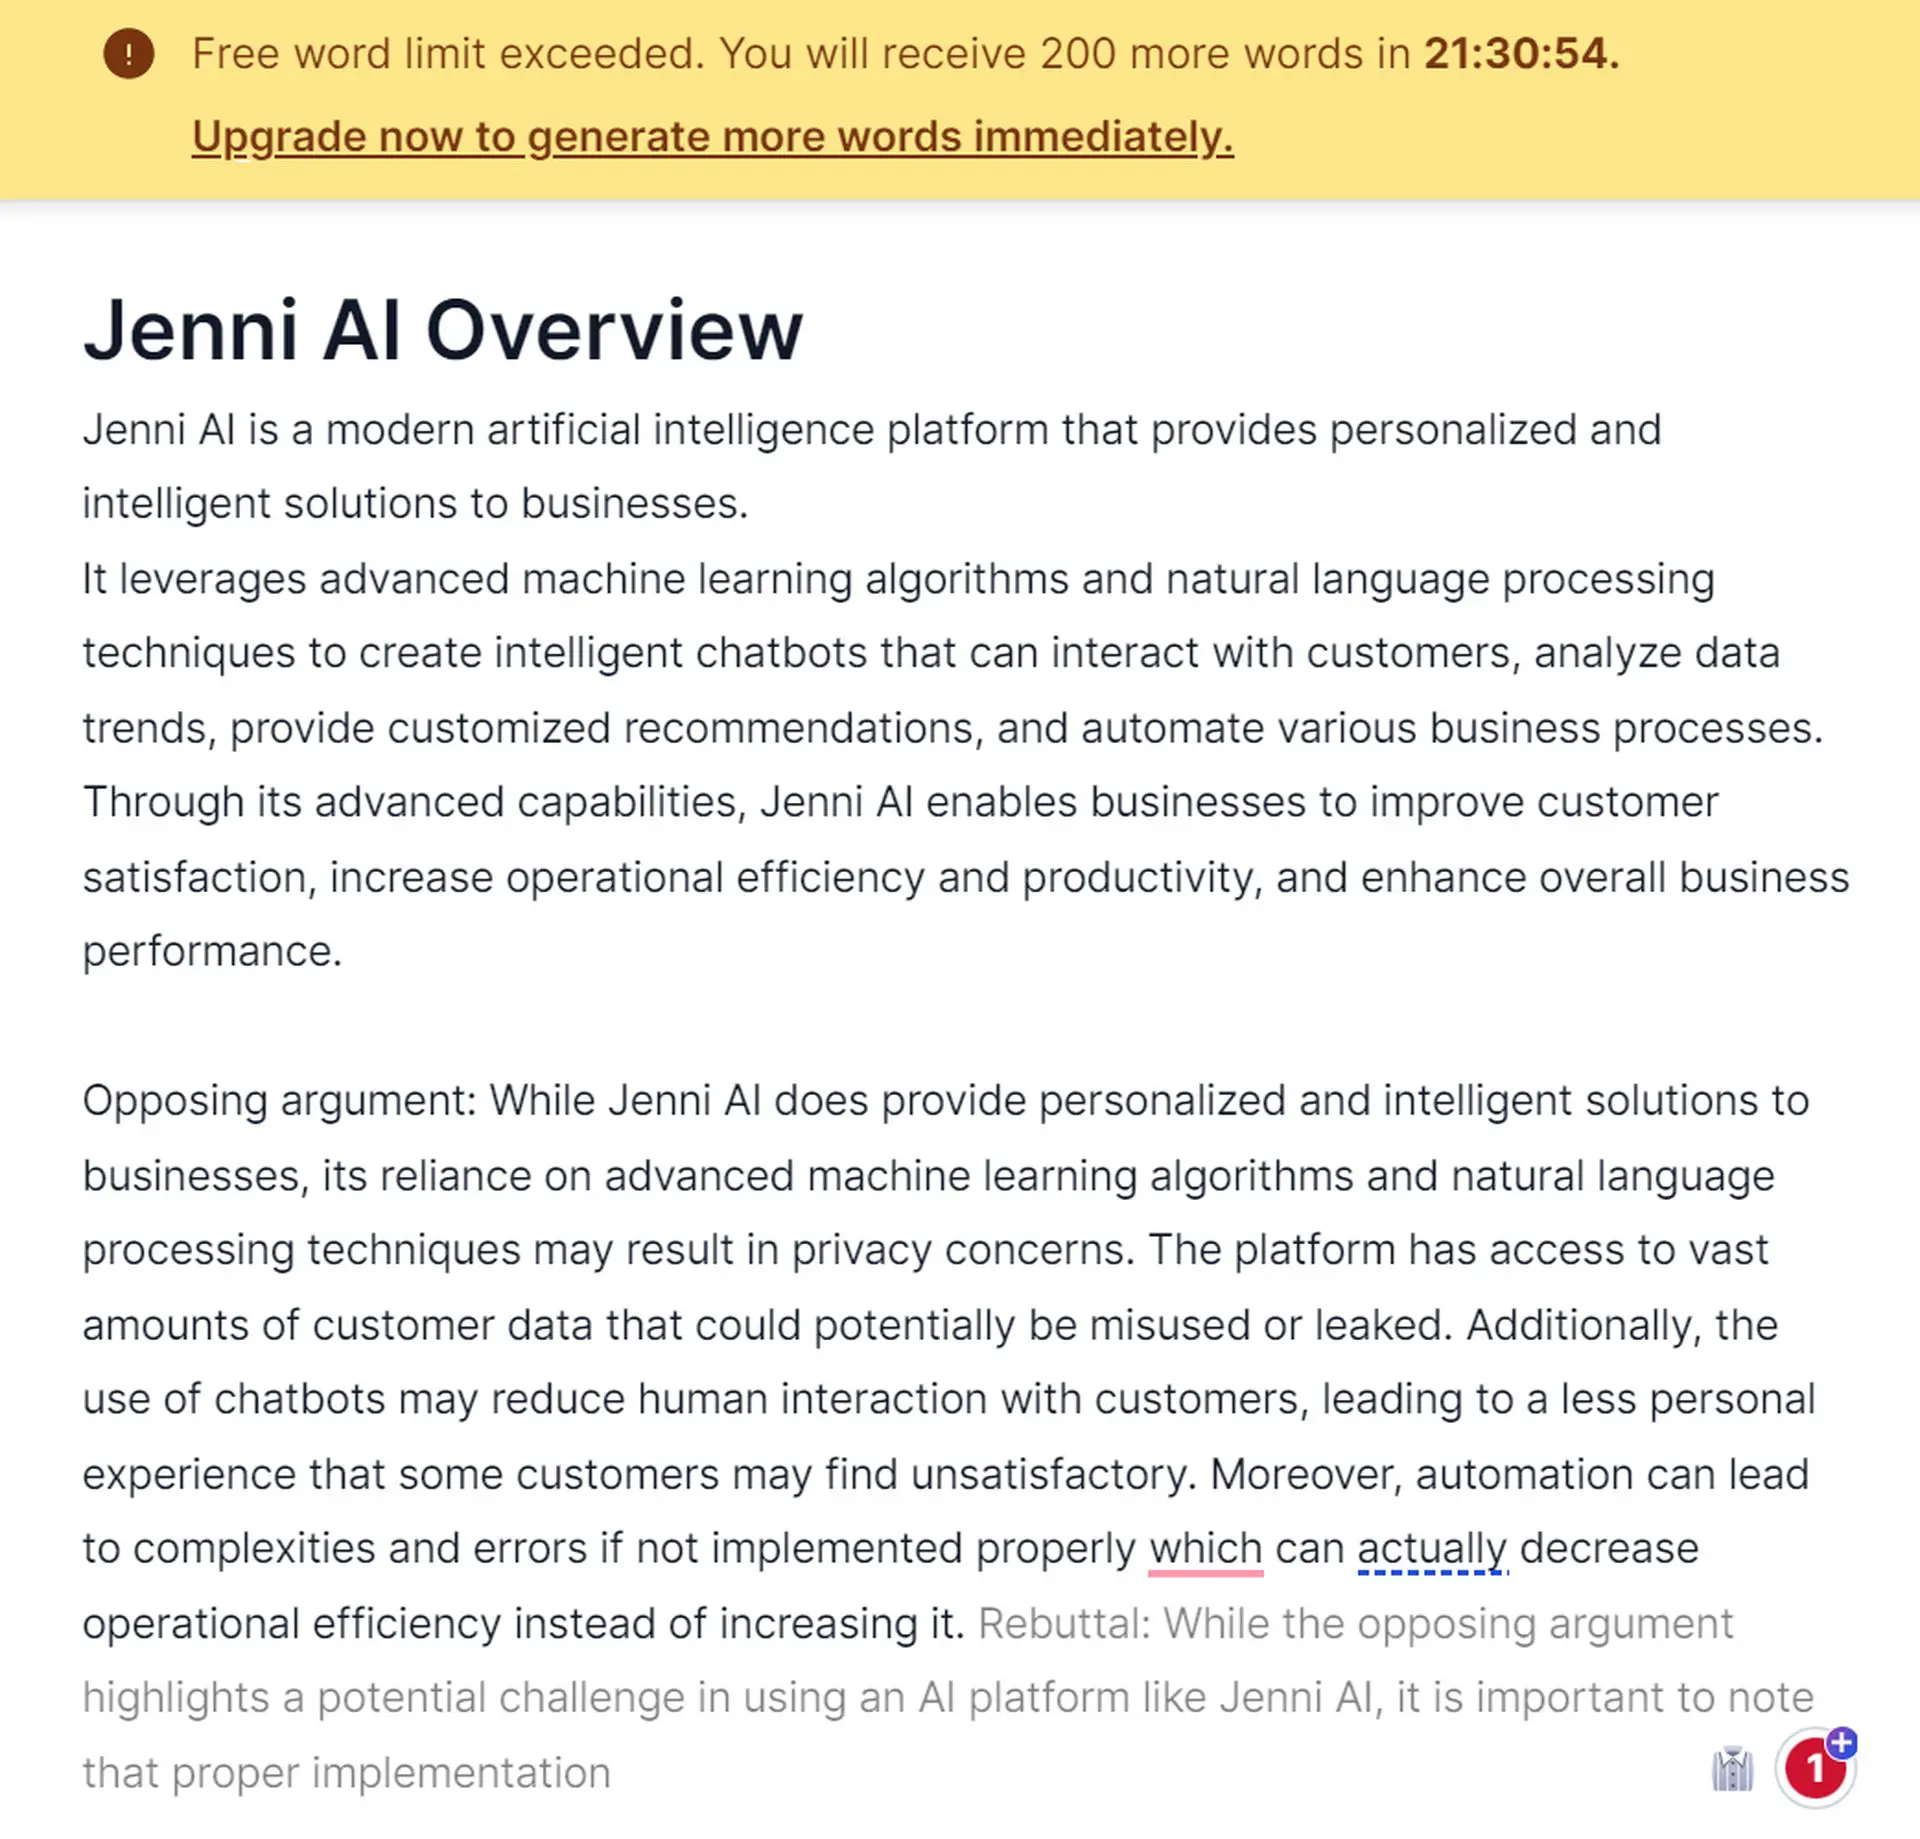 제니AI란 무엇이며 어떻게 사용하나요? 예제를 통해 기능을 알아보고 비용을 지불하고 싶지 않다면 무료 Jenni AI 대안을 찾아보세요! 계속 읽으세요...